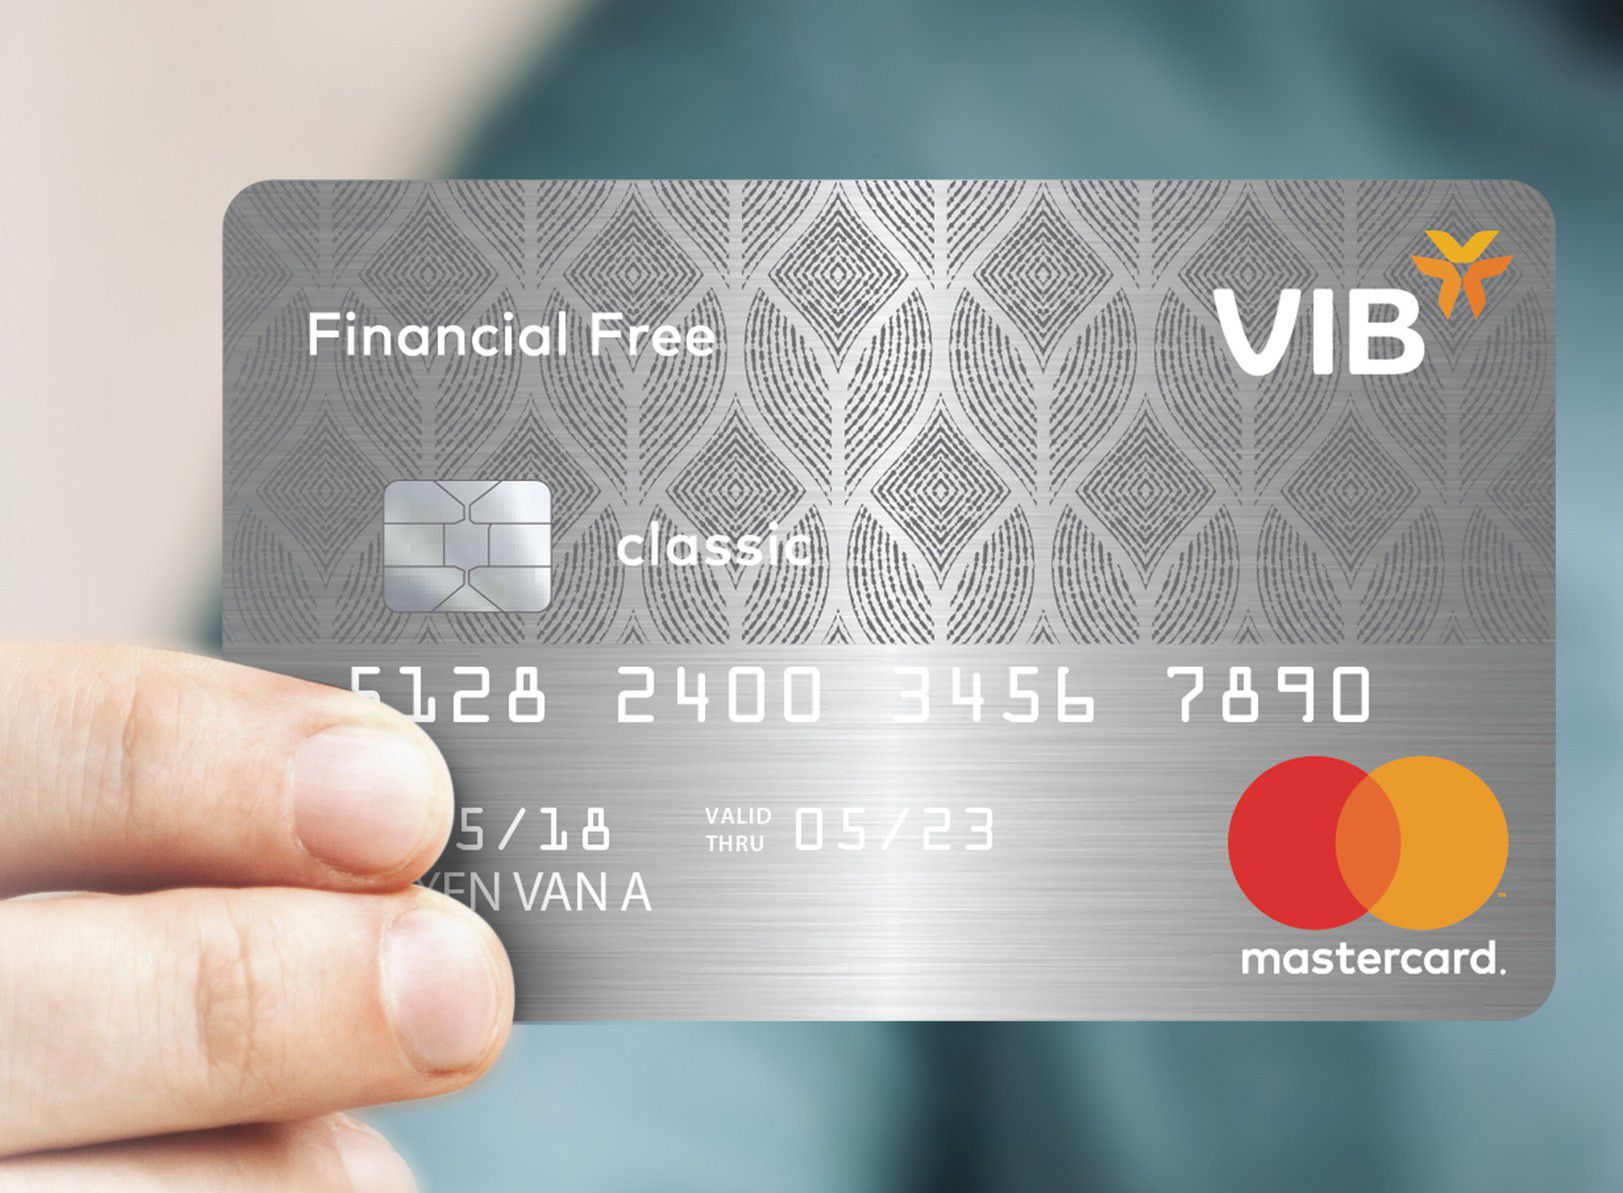 Thẻ tín dụng VIB Financial Free –Rút tiền liền tay không giới hạn